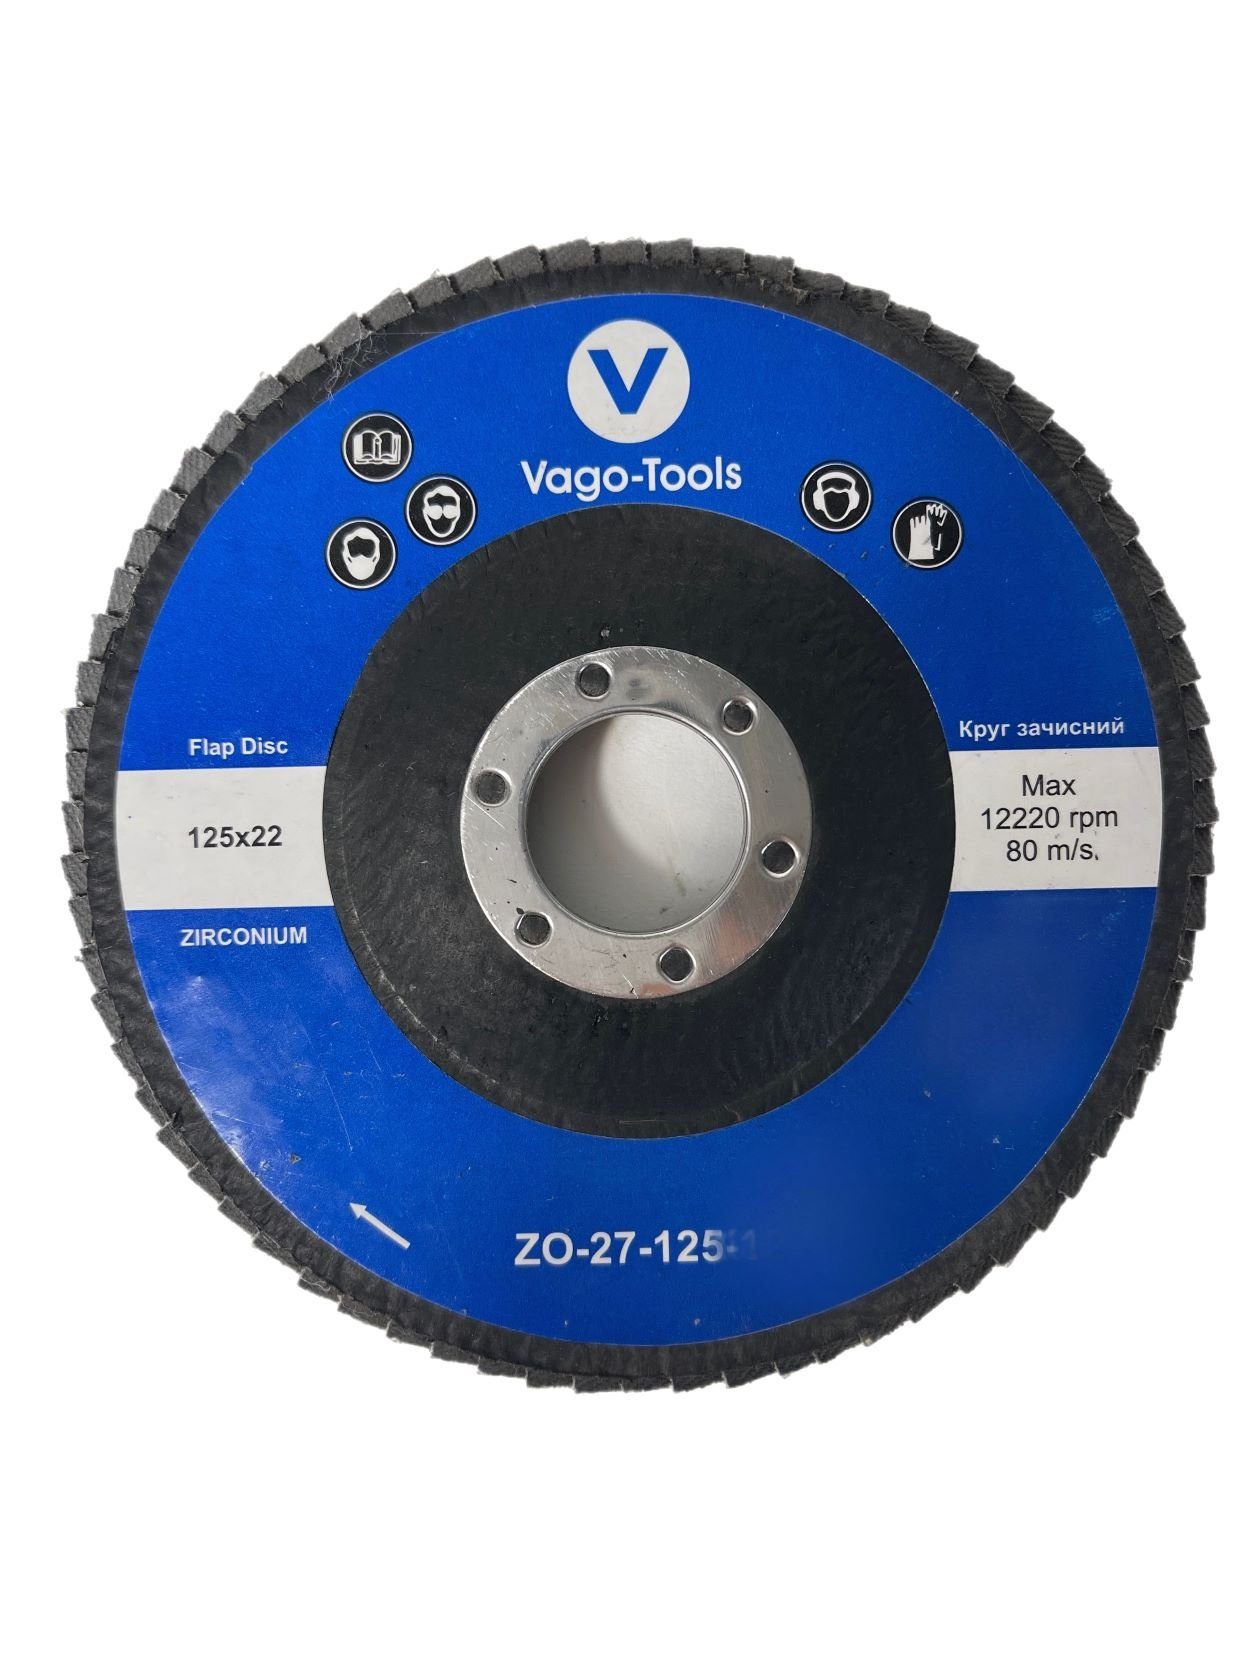 VaGo-Tools Schleifscheibe Fächerschleifscheiben 125mm P80 flach Blau 20x, (Packung)